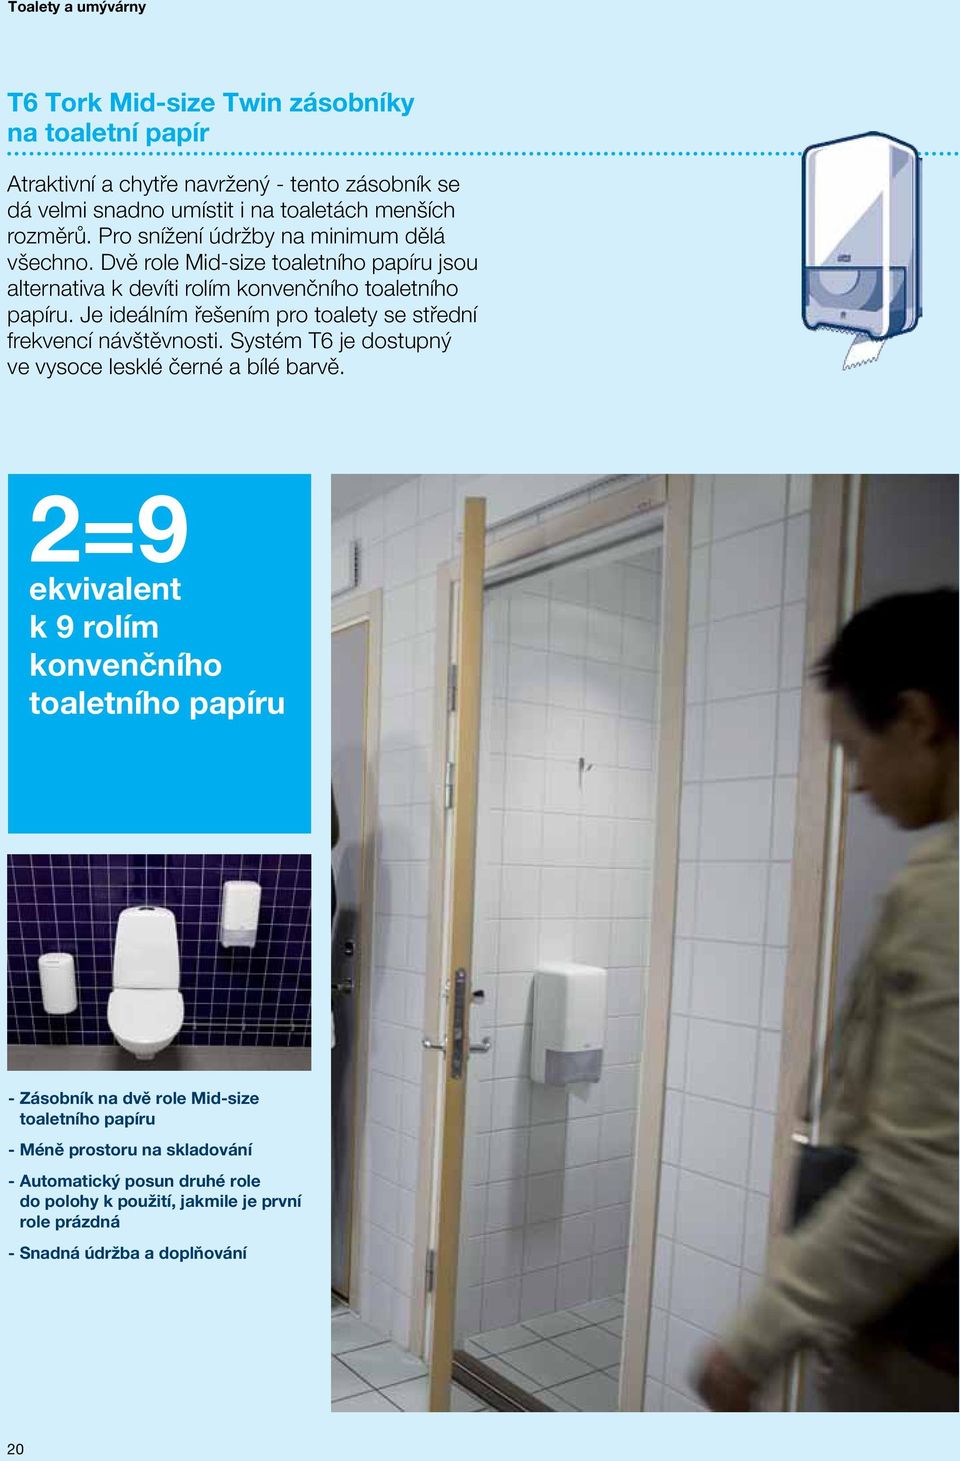 Je ideálním řešením pro toalety se střední frekvencí návštěvnosti. Systém T6 je dostupný ve vysoce lesklé černé a bílé barvě.